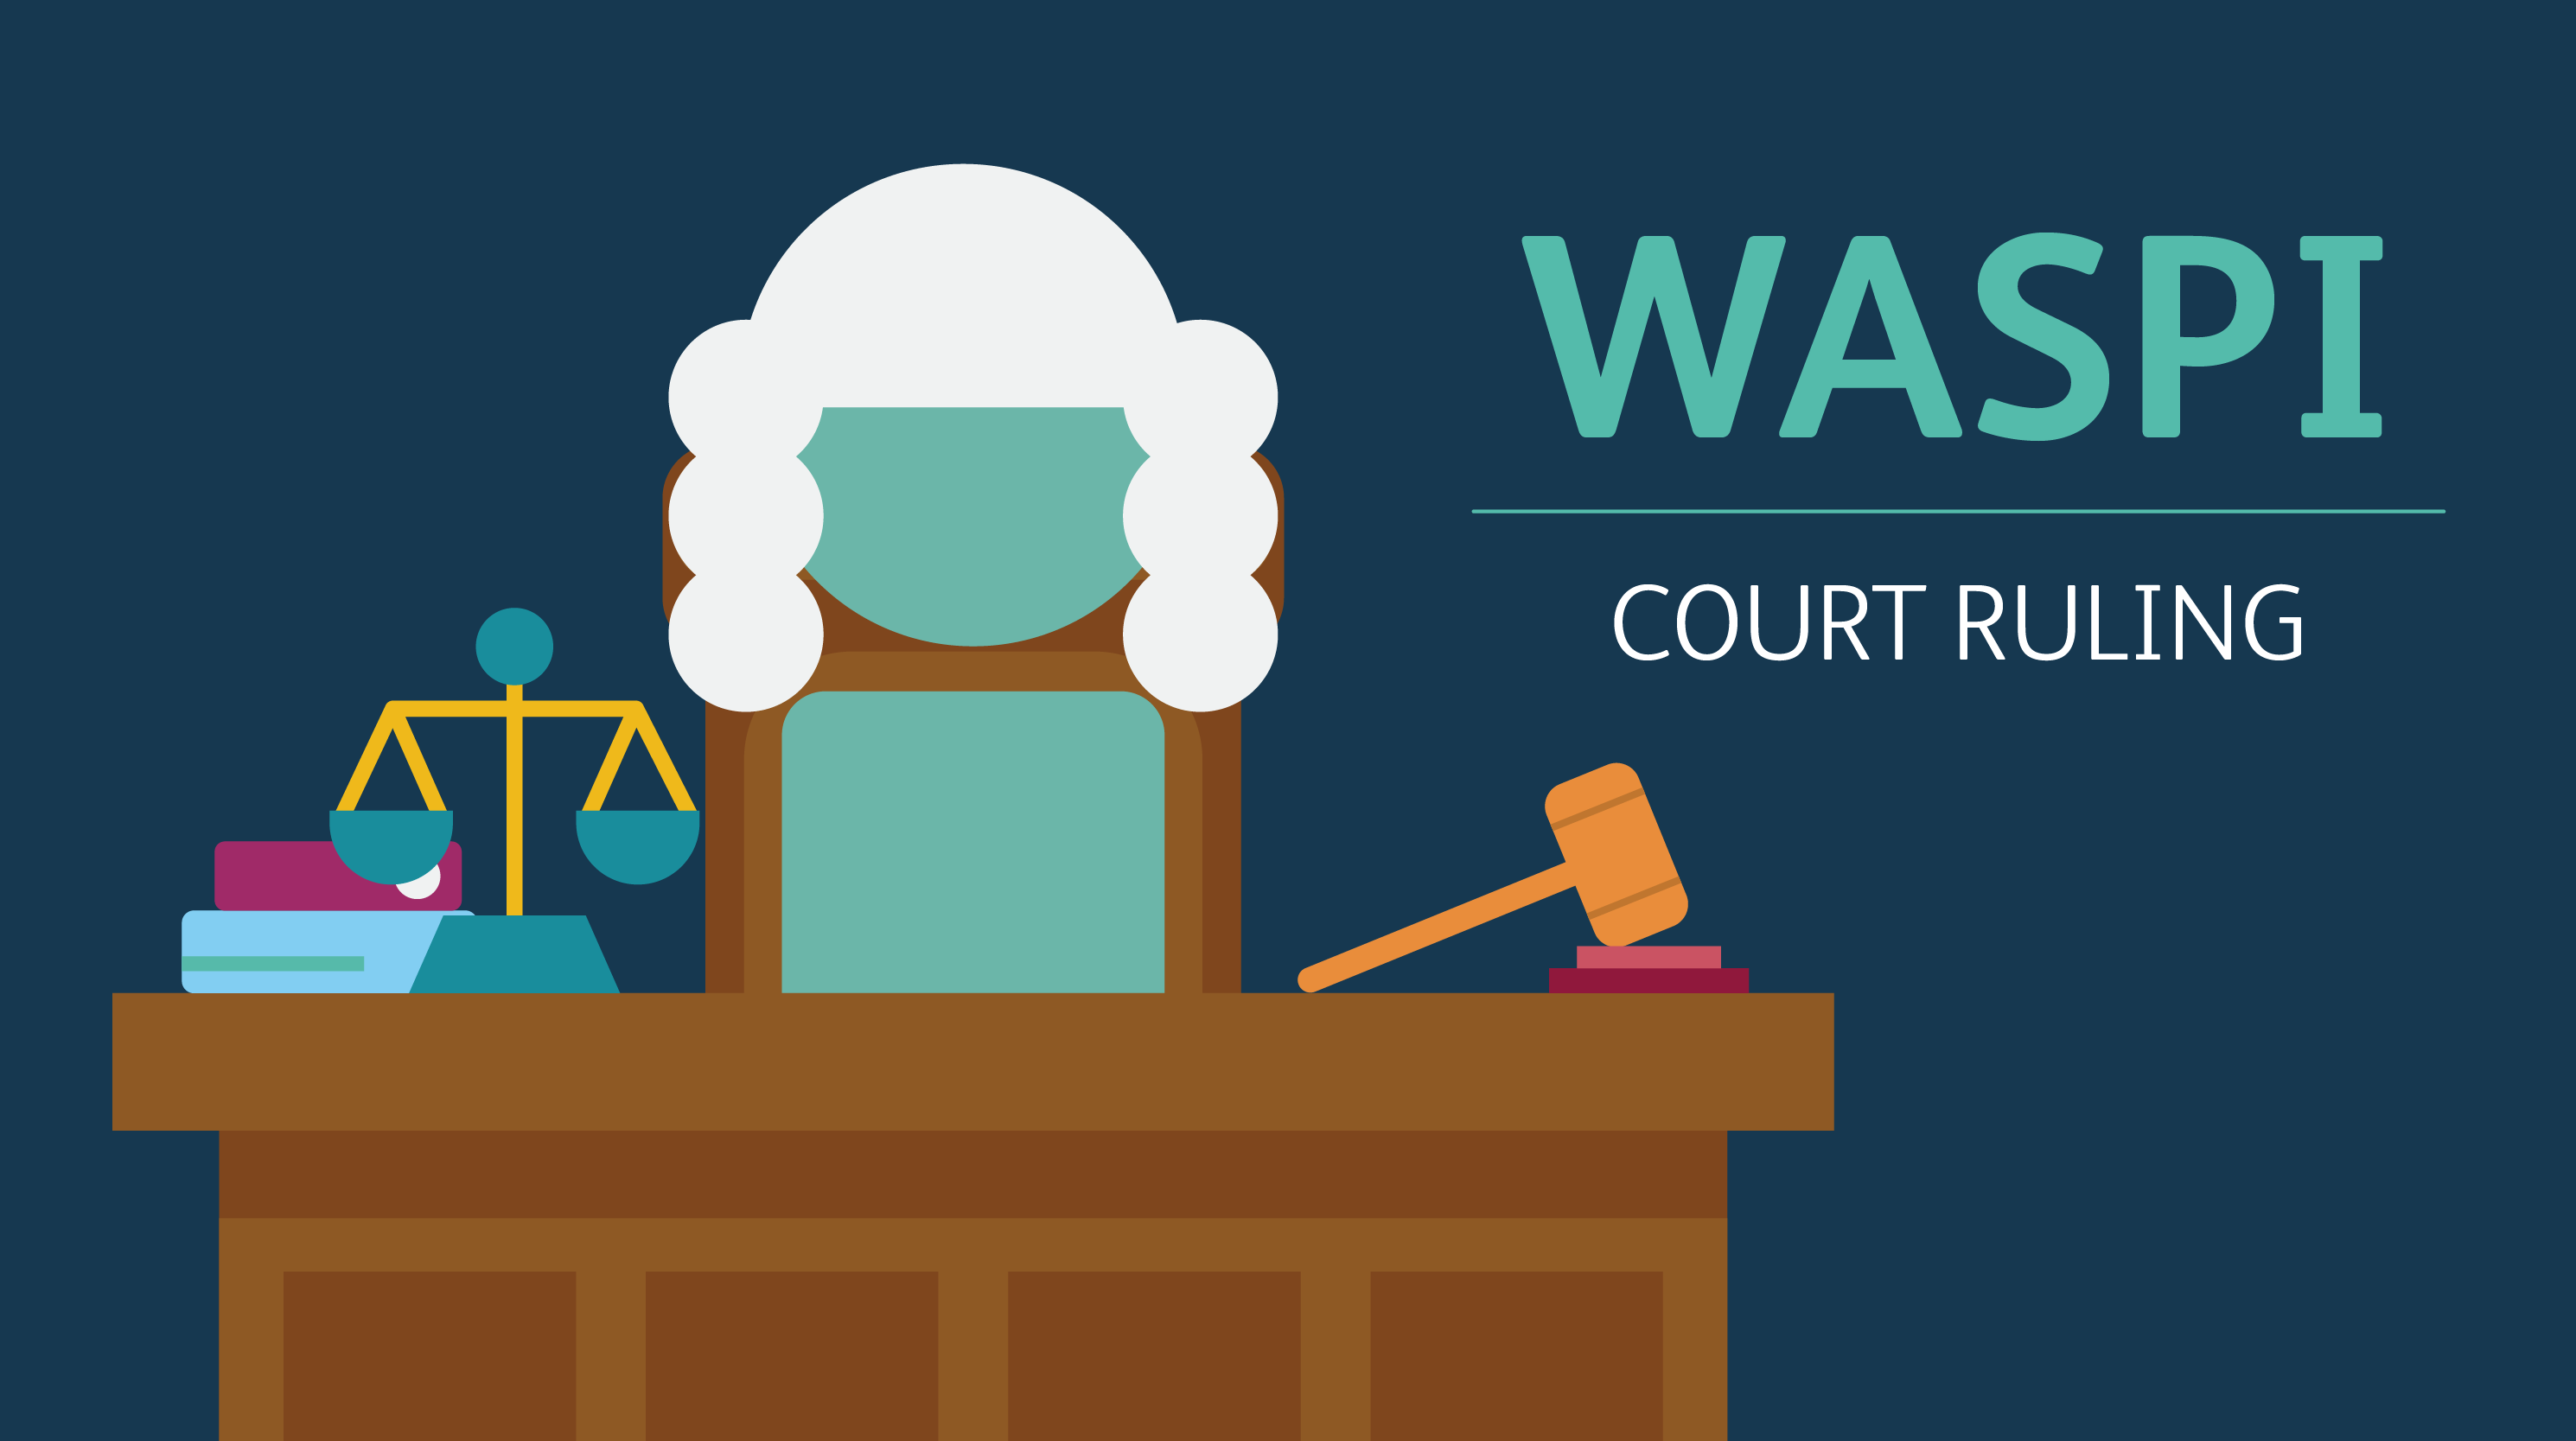 WASPI court ruling update